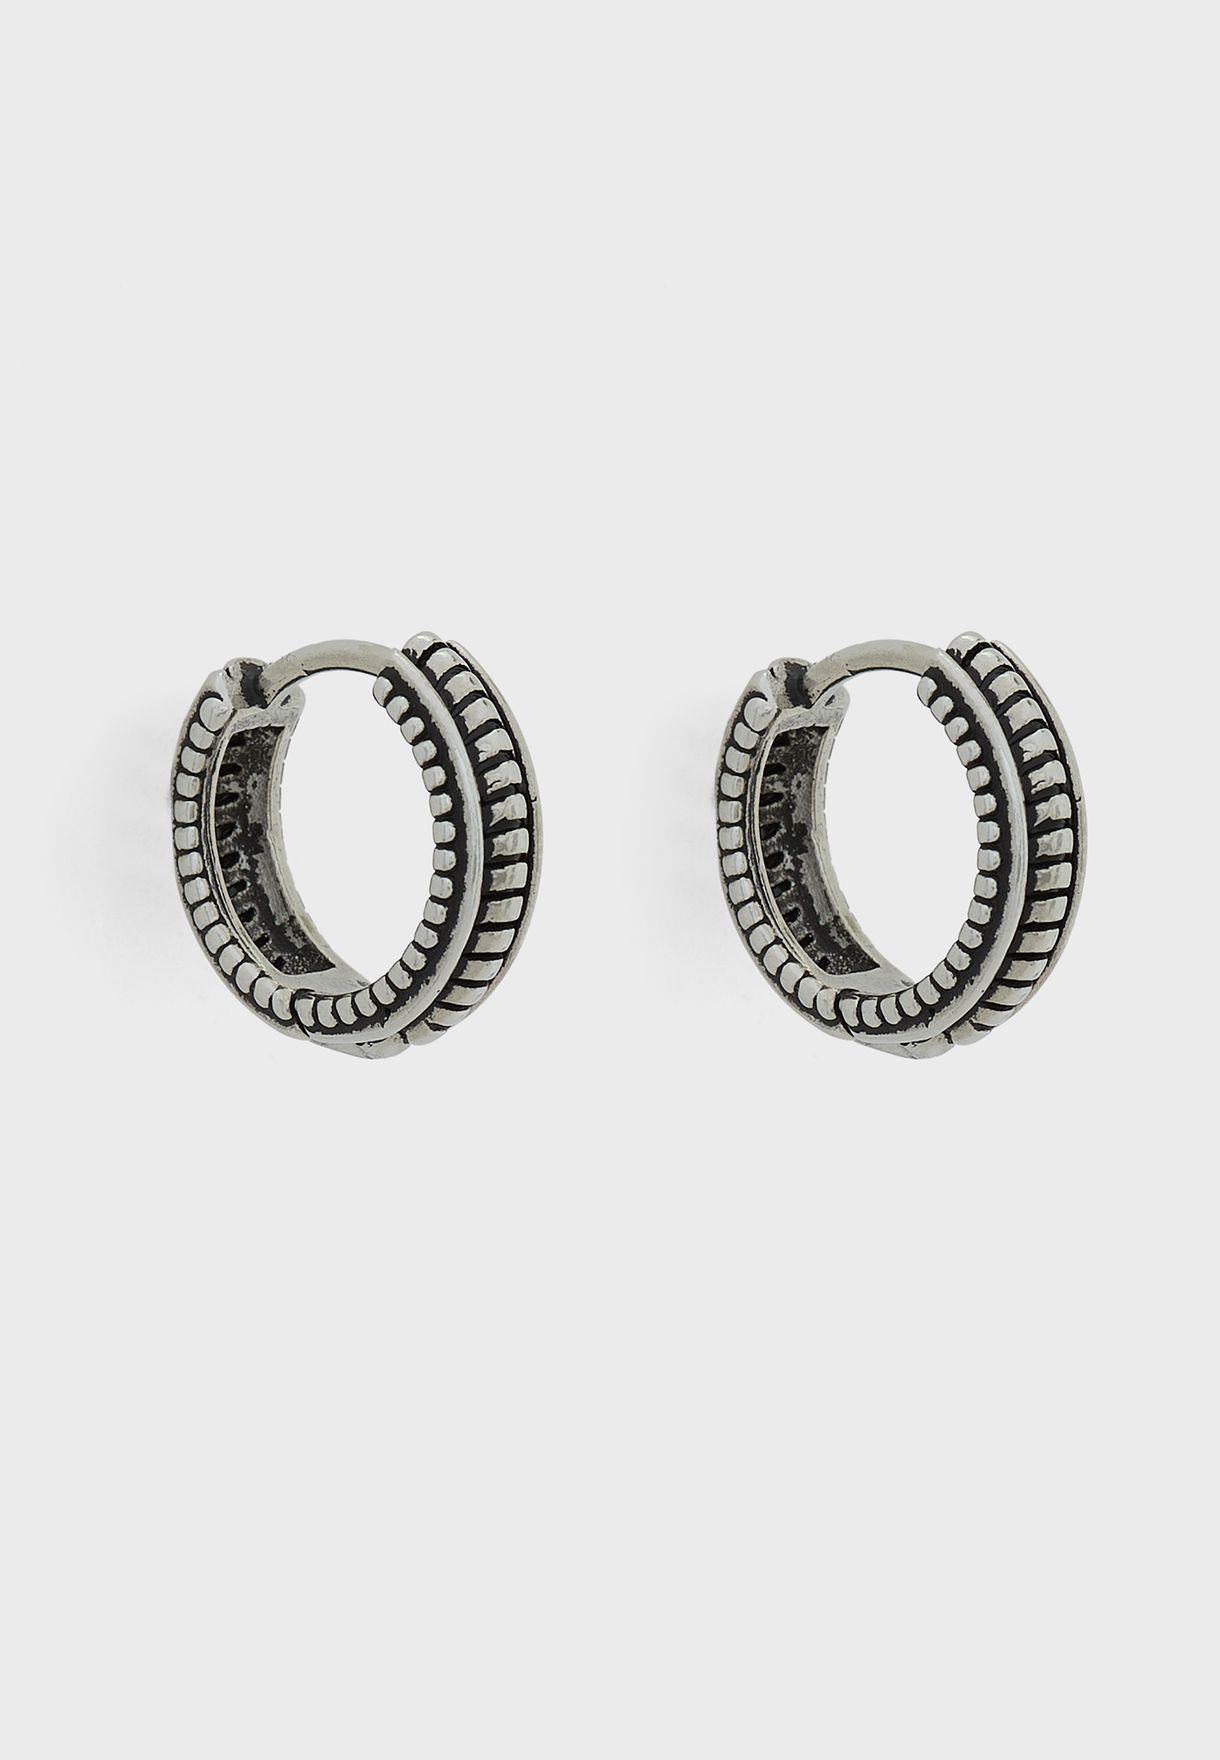 Oxidised Stainless Steel Hoop Earrings